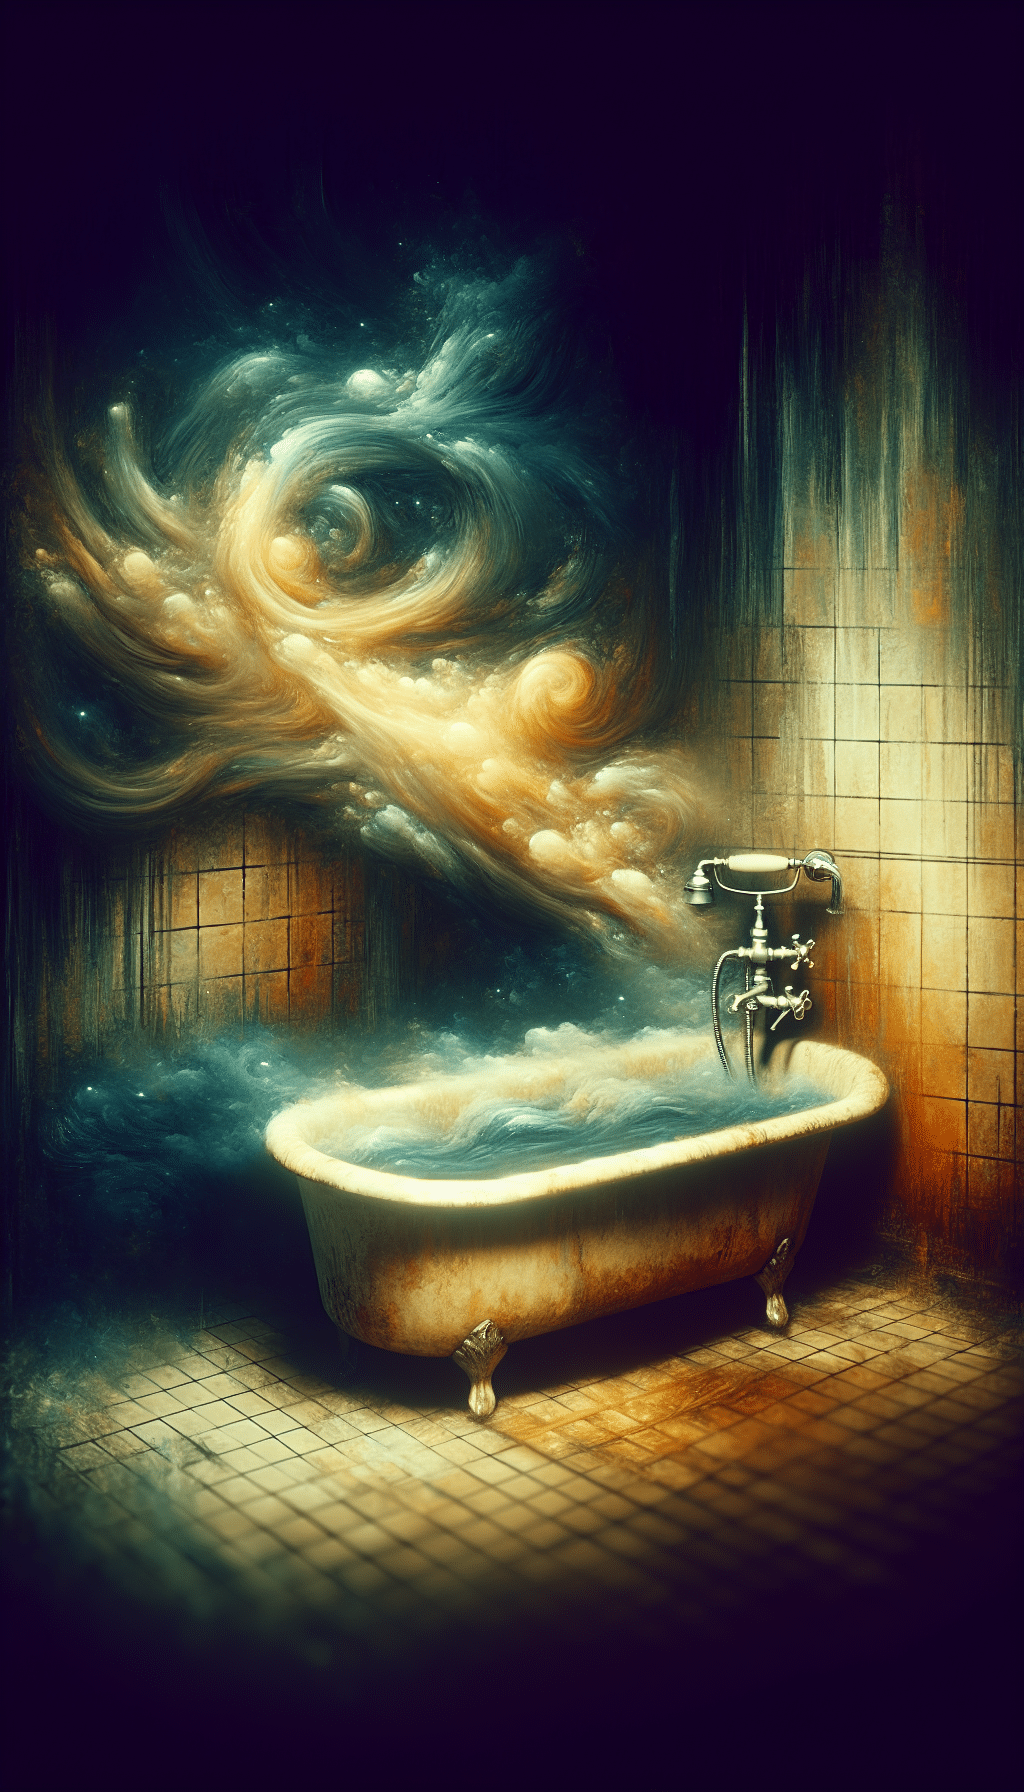 dirty bathtub dream meaning